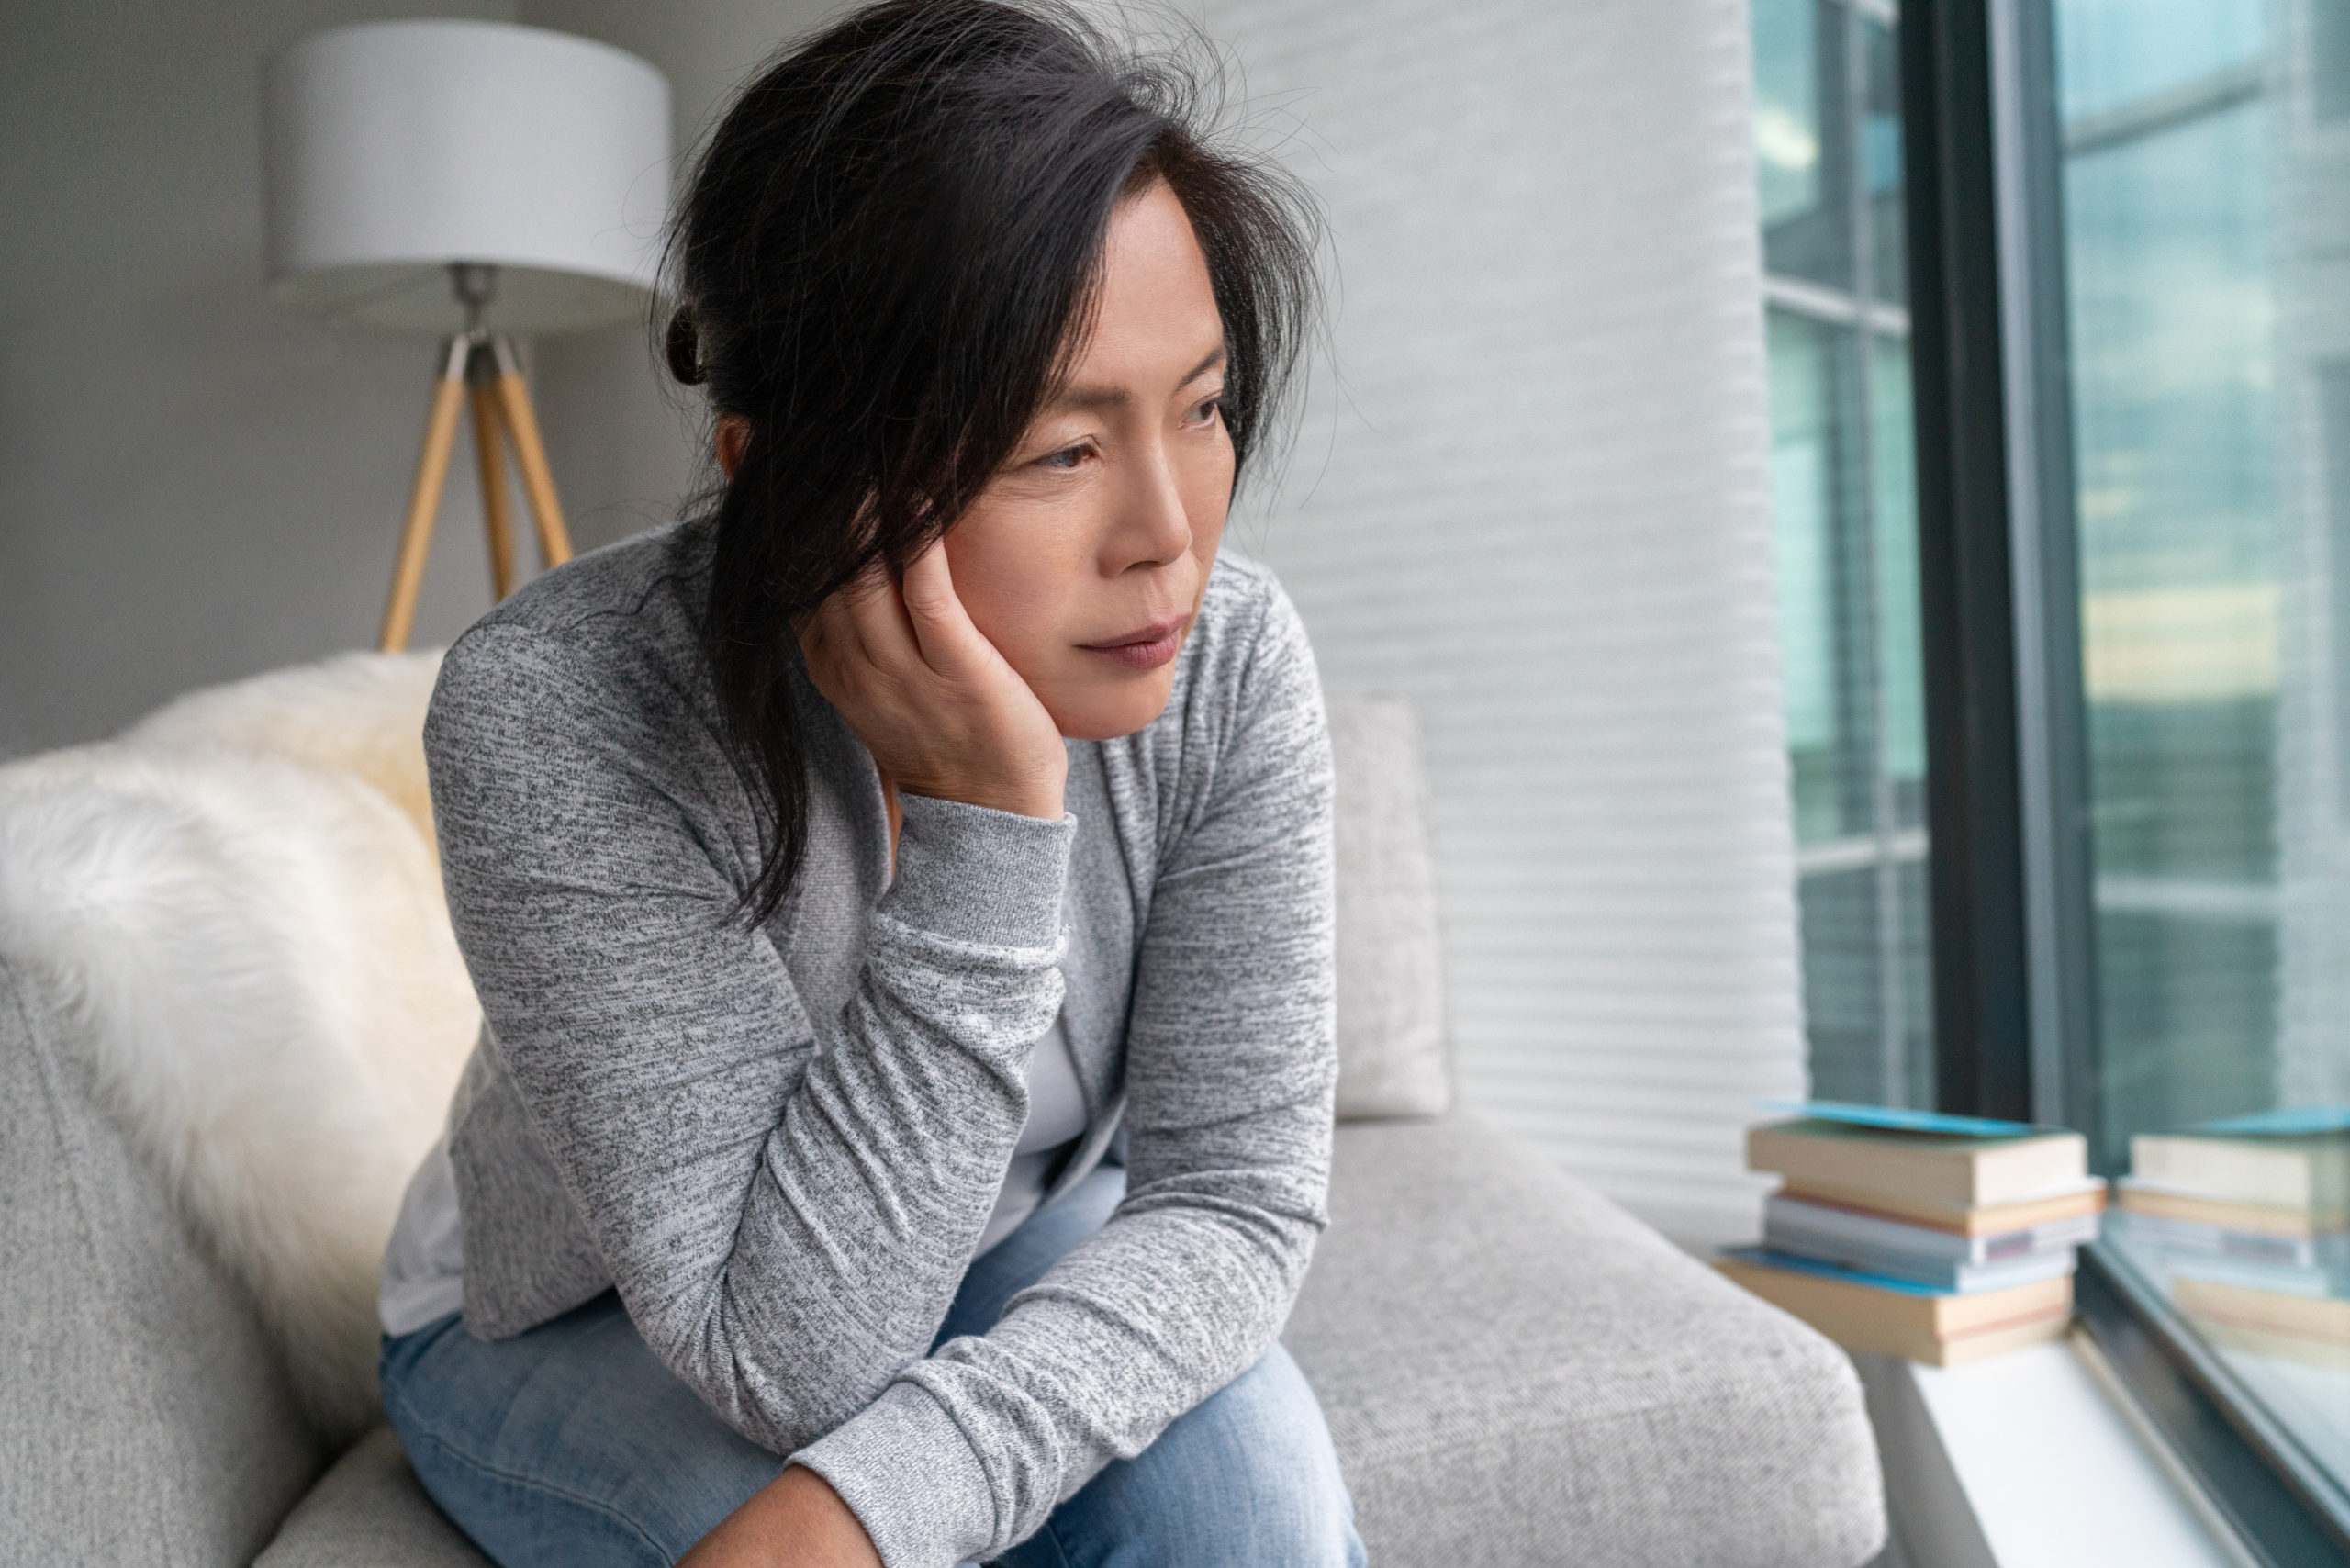 Person experiencing menopause symptoms